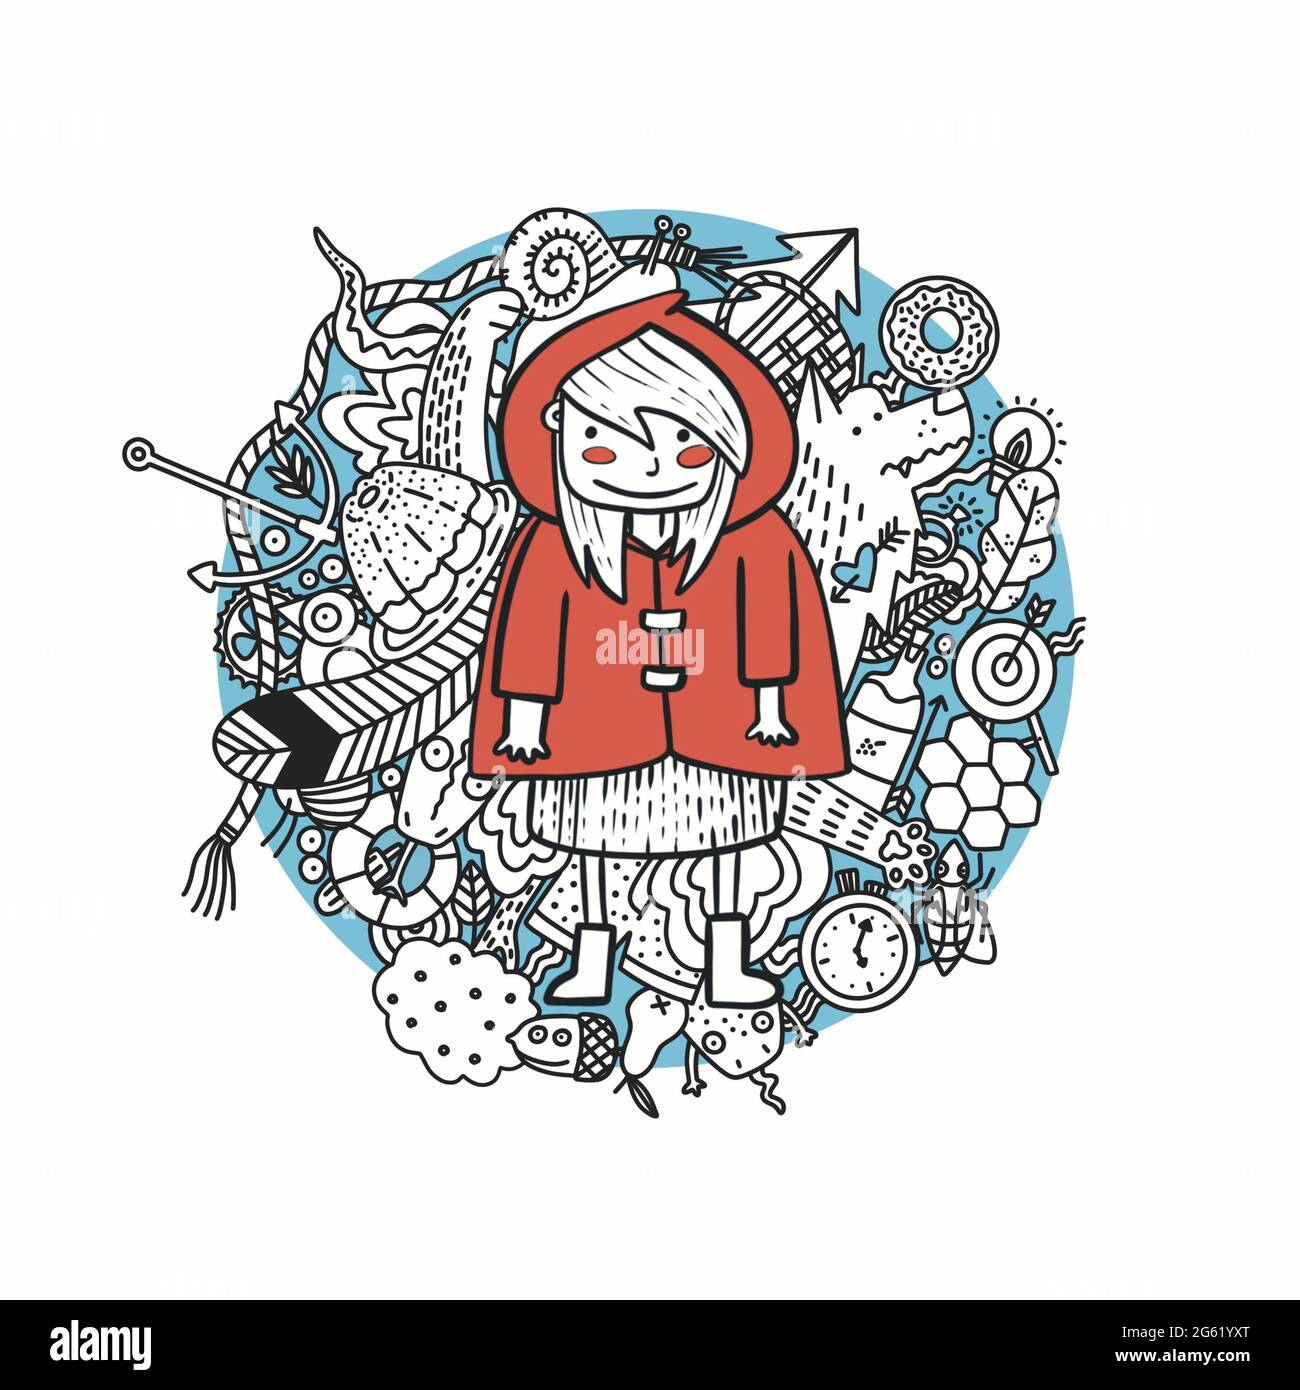 Das kleine Mädchen im roten Mantel. Rote Reithaube und viele kleine Dinge auf dem Hintergrund. Stockfoto